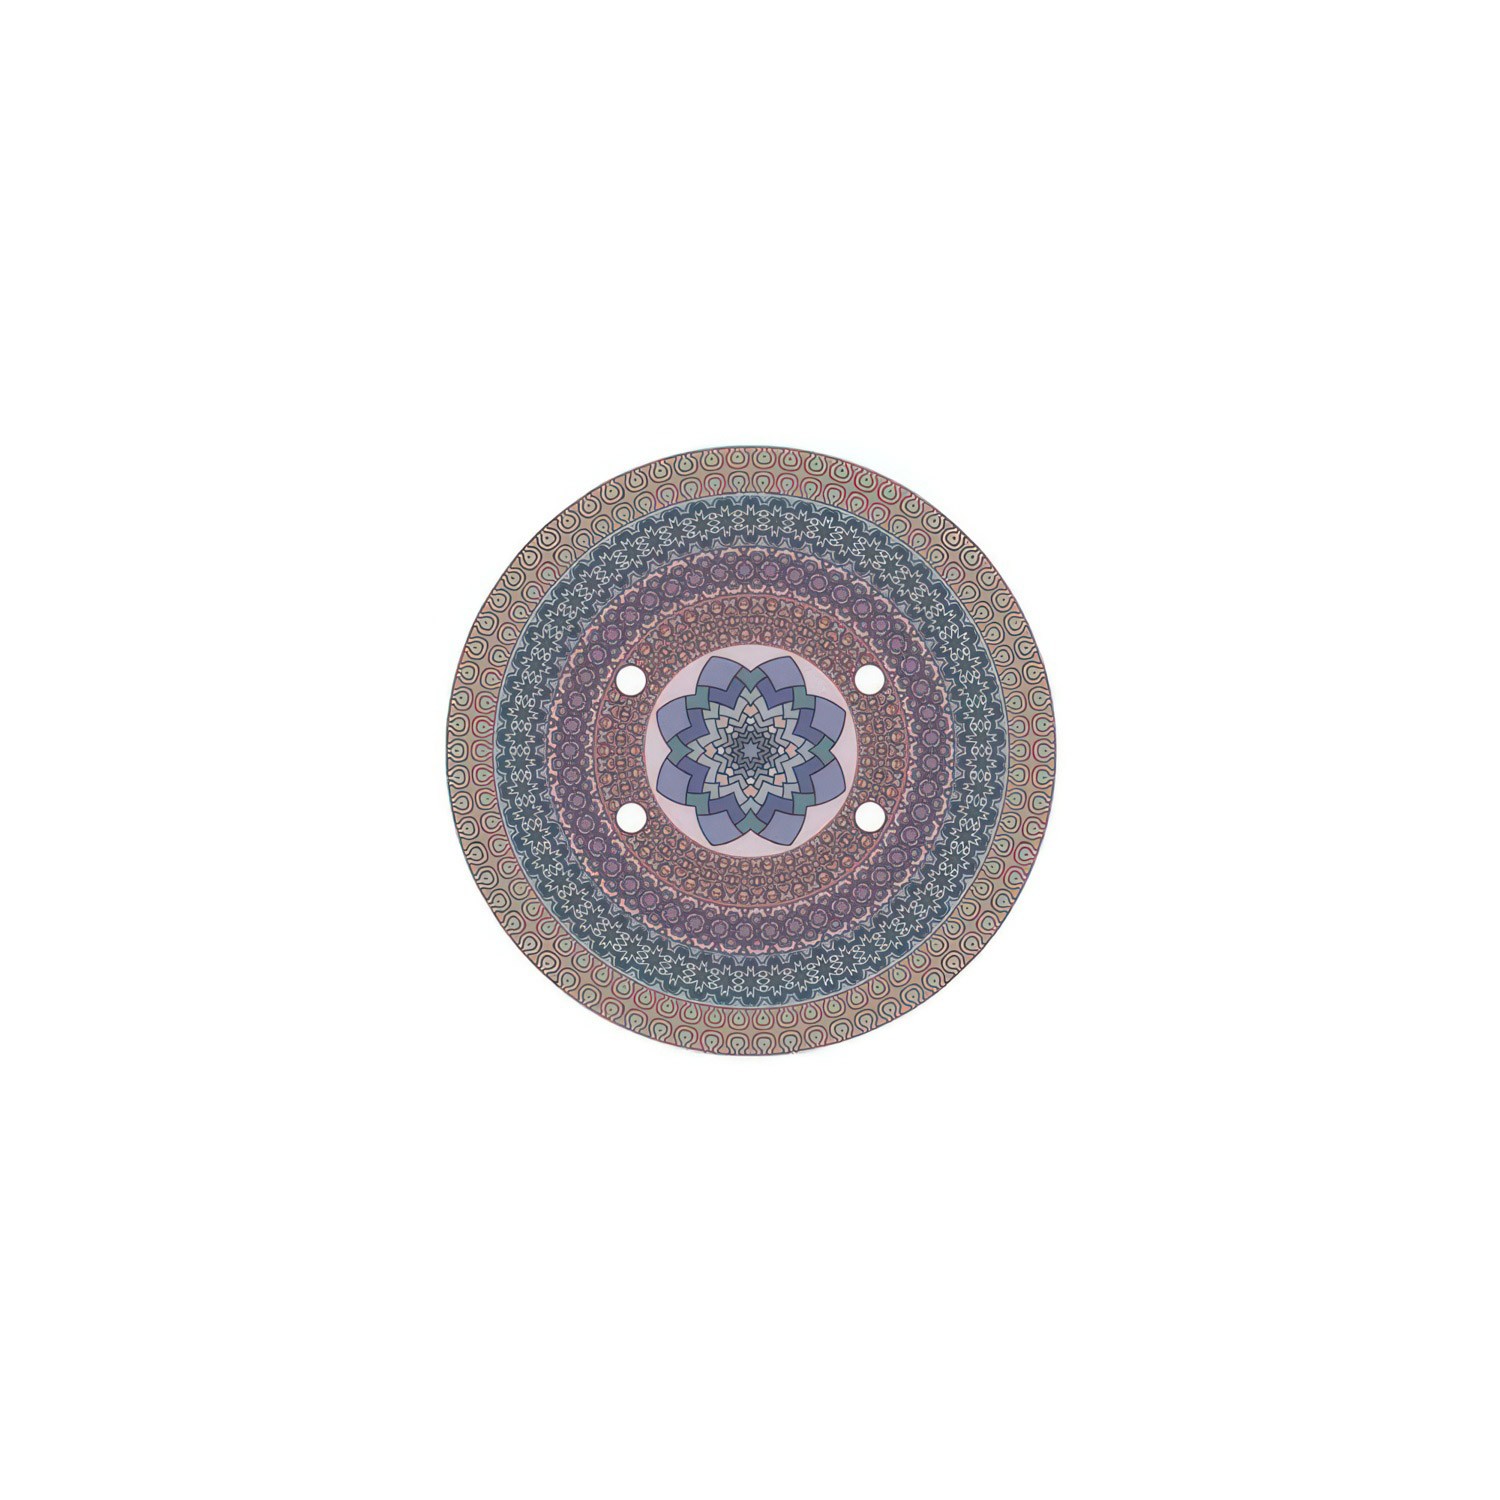 Rundes 4-Loch und 4 Seitenlöchern Lampenbaldachin, Rose-One-Abdeckung, 200 mm Durchmesser - PROMO